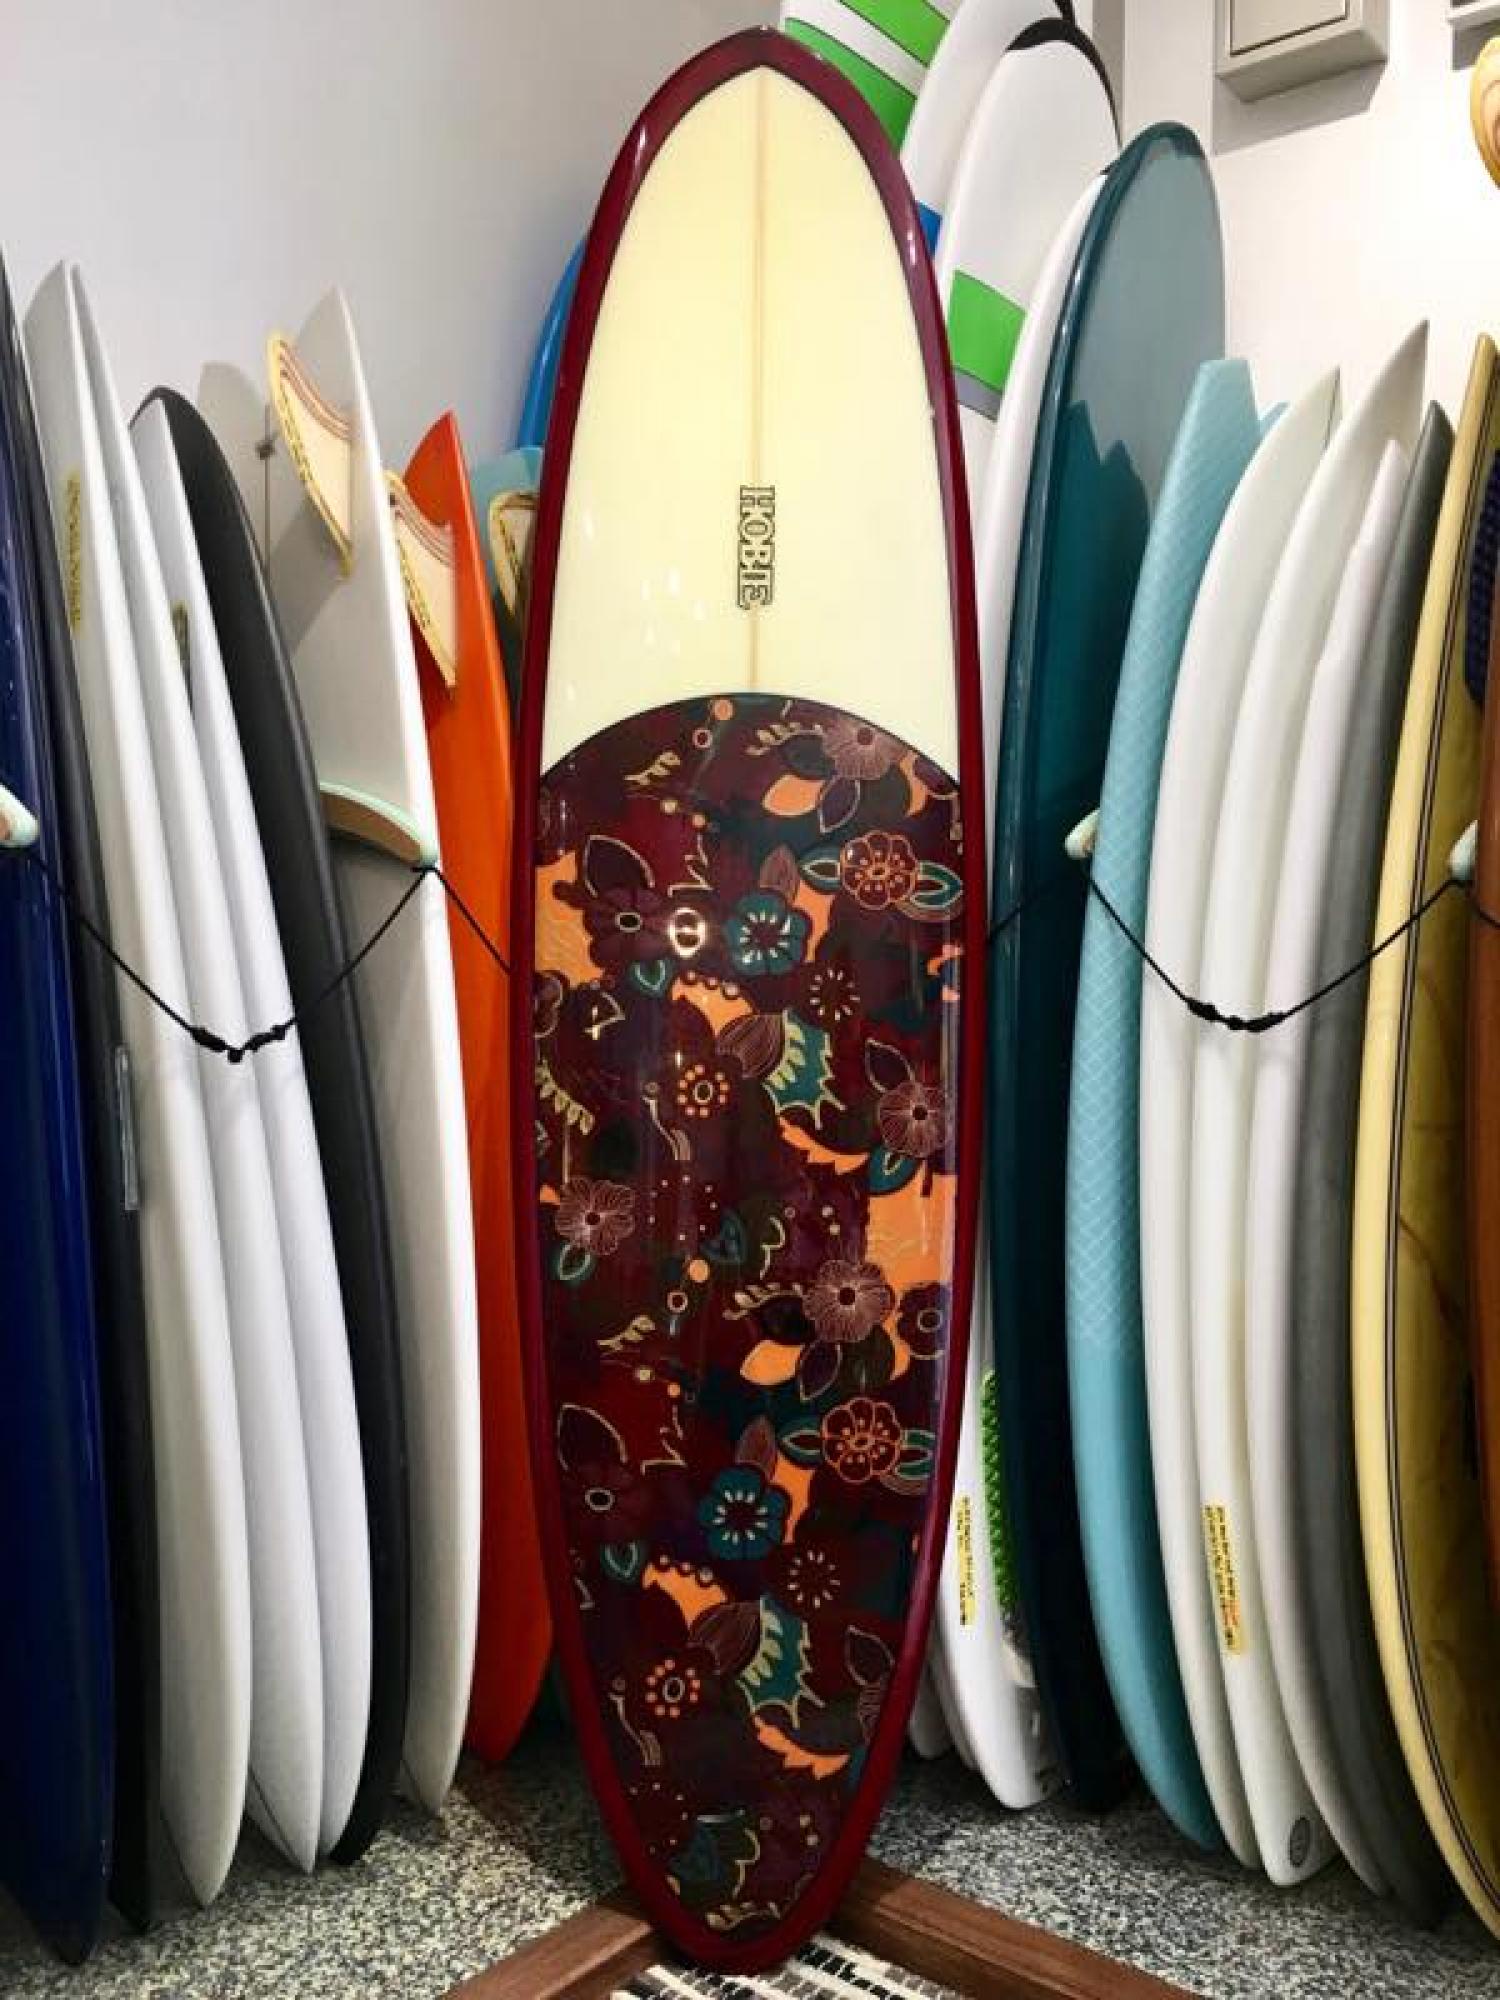 USED BOARDS （HOBIE SURFBOARDS-RETORO EGG 7.1)